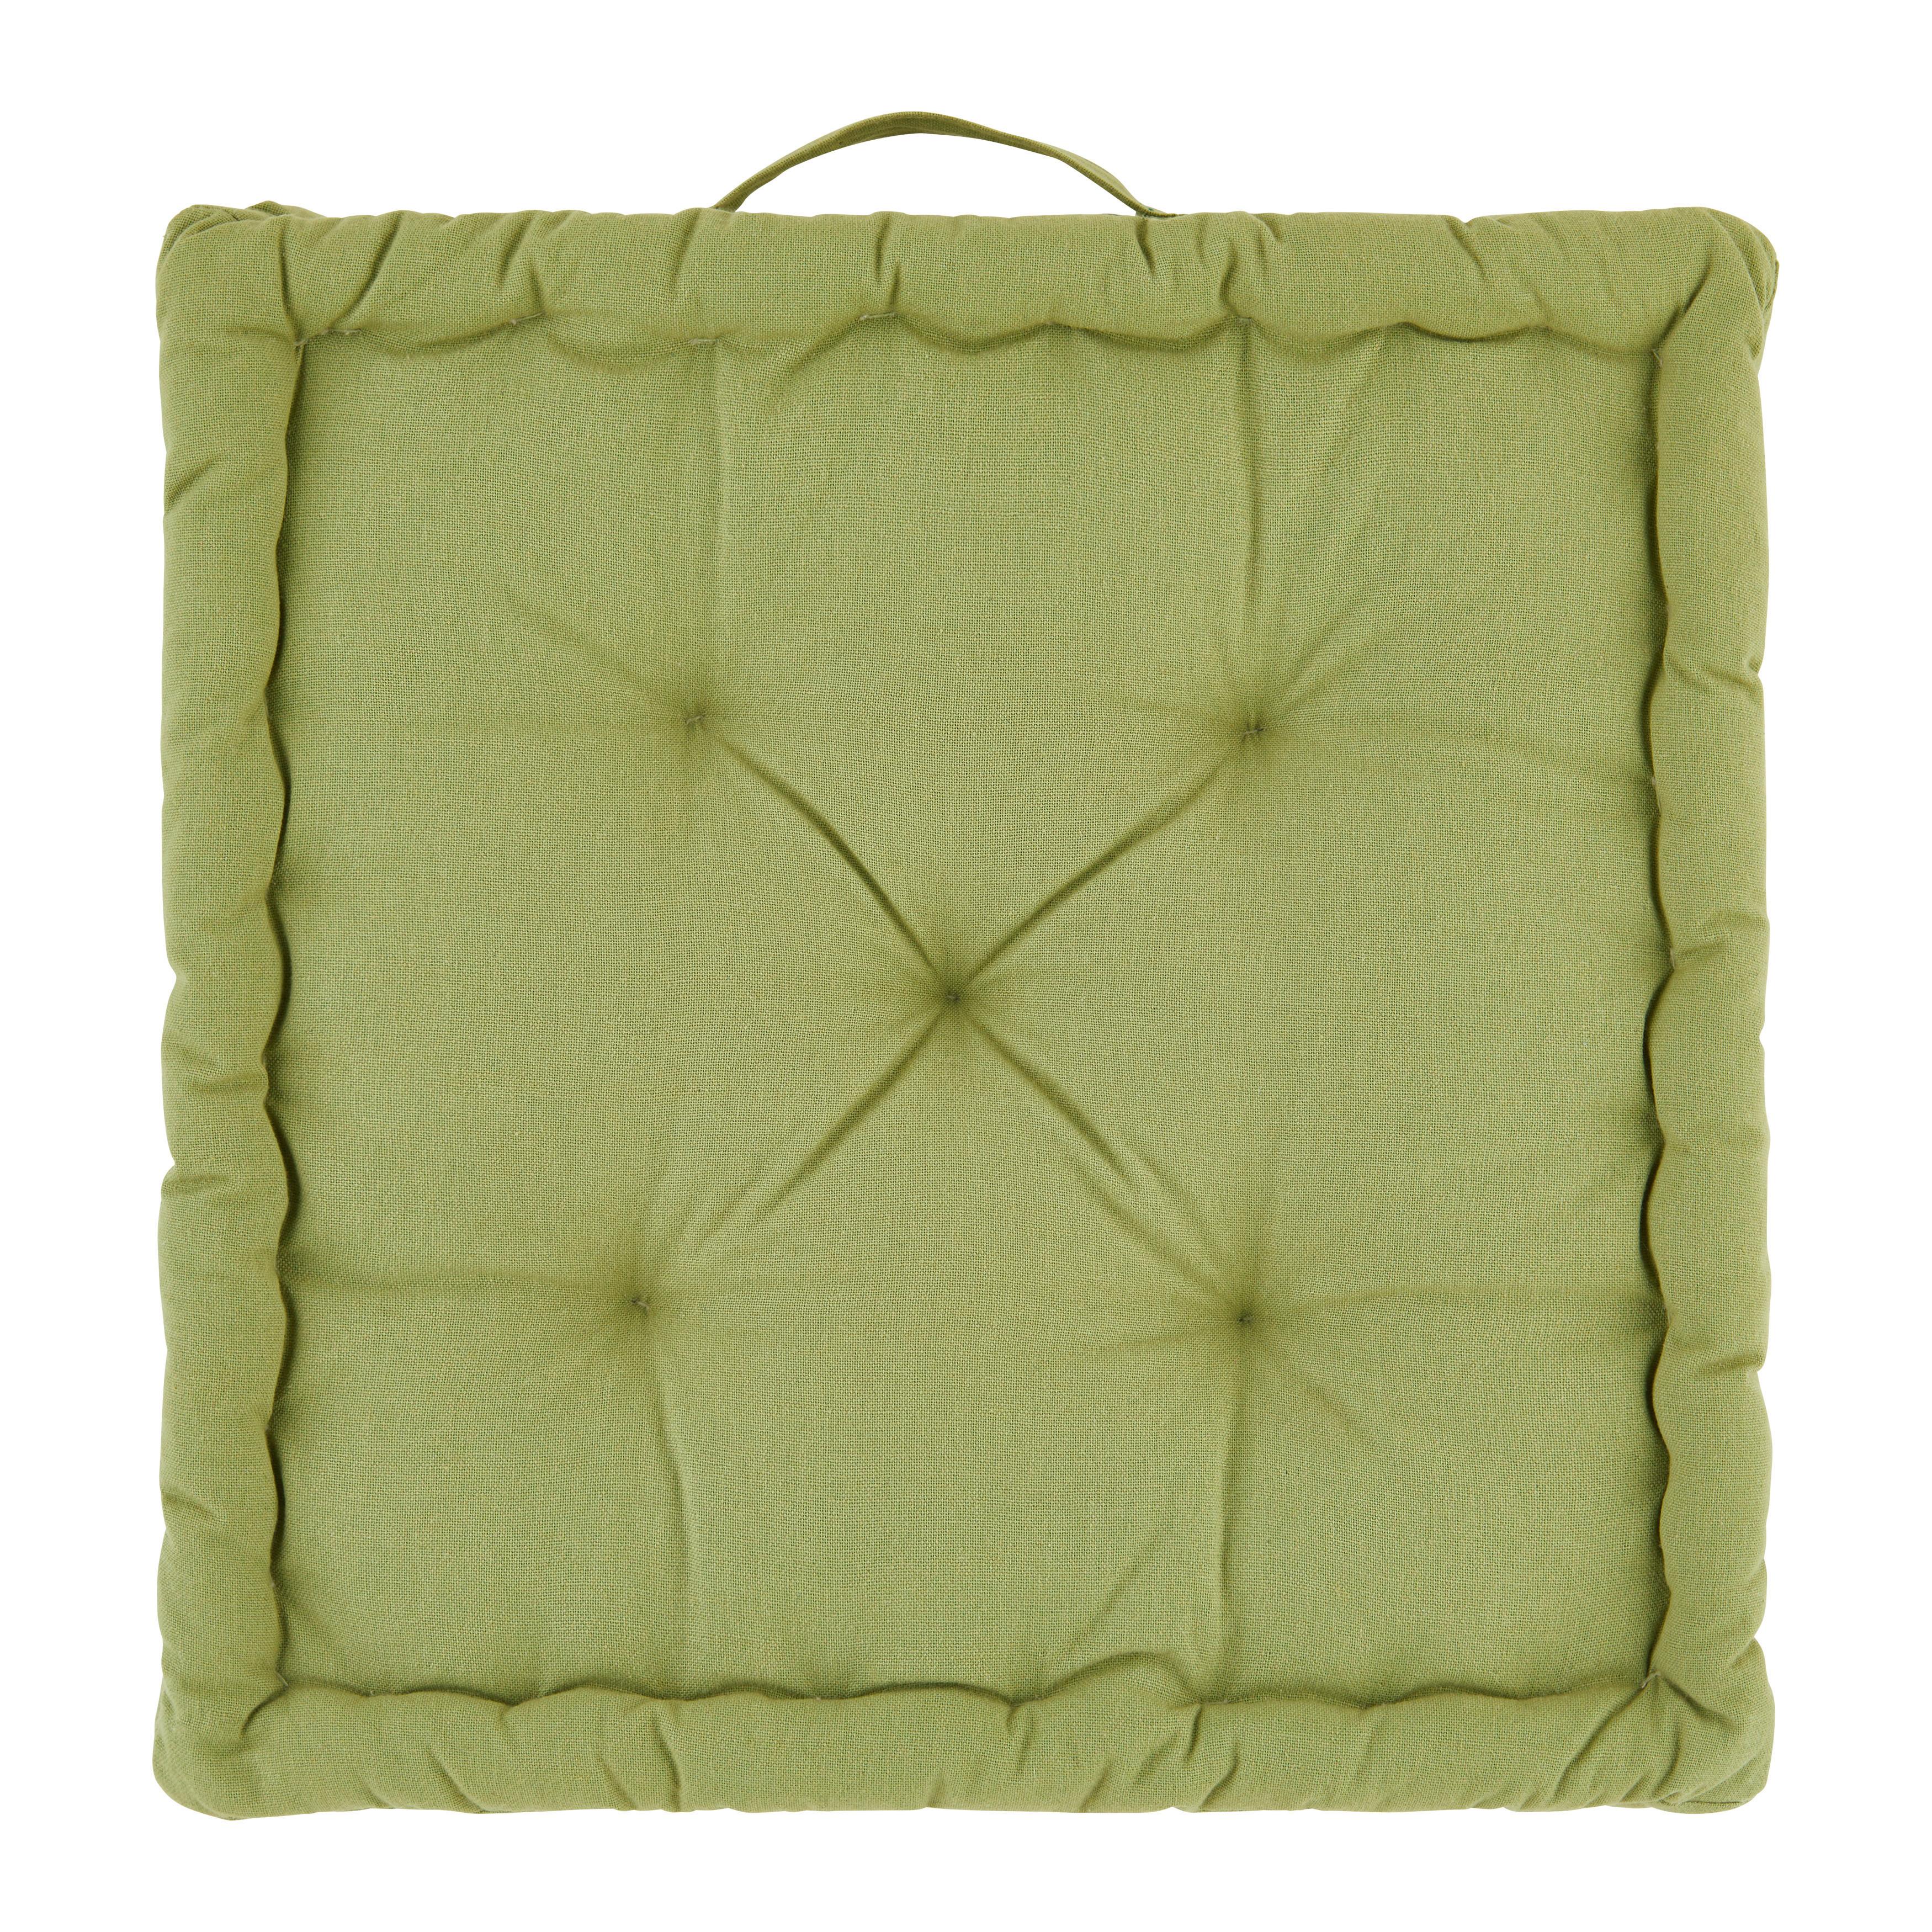 Blazina Za Sedenje Bo - zelena, tekstil (40/40/6cm) - Modern Living